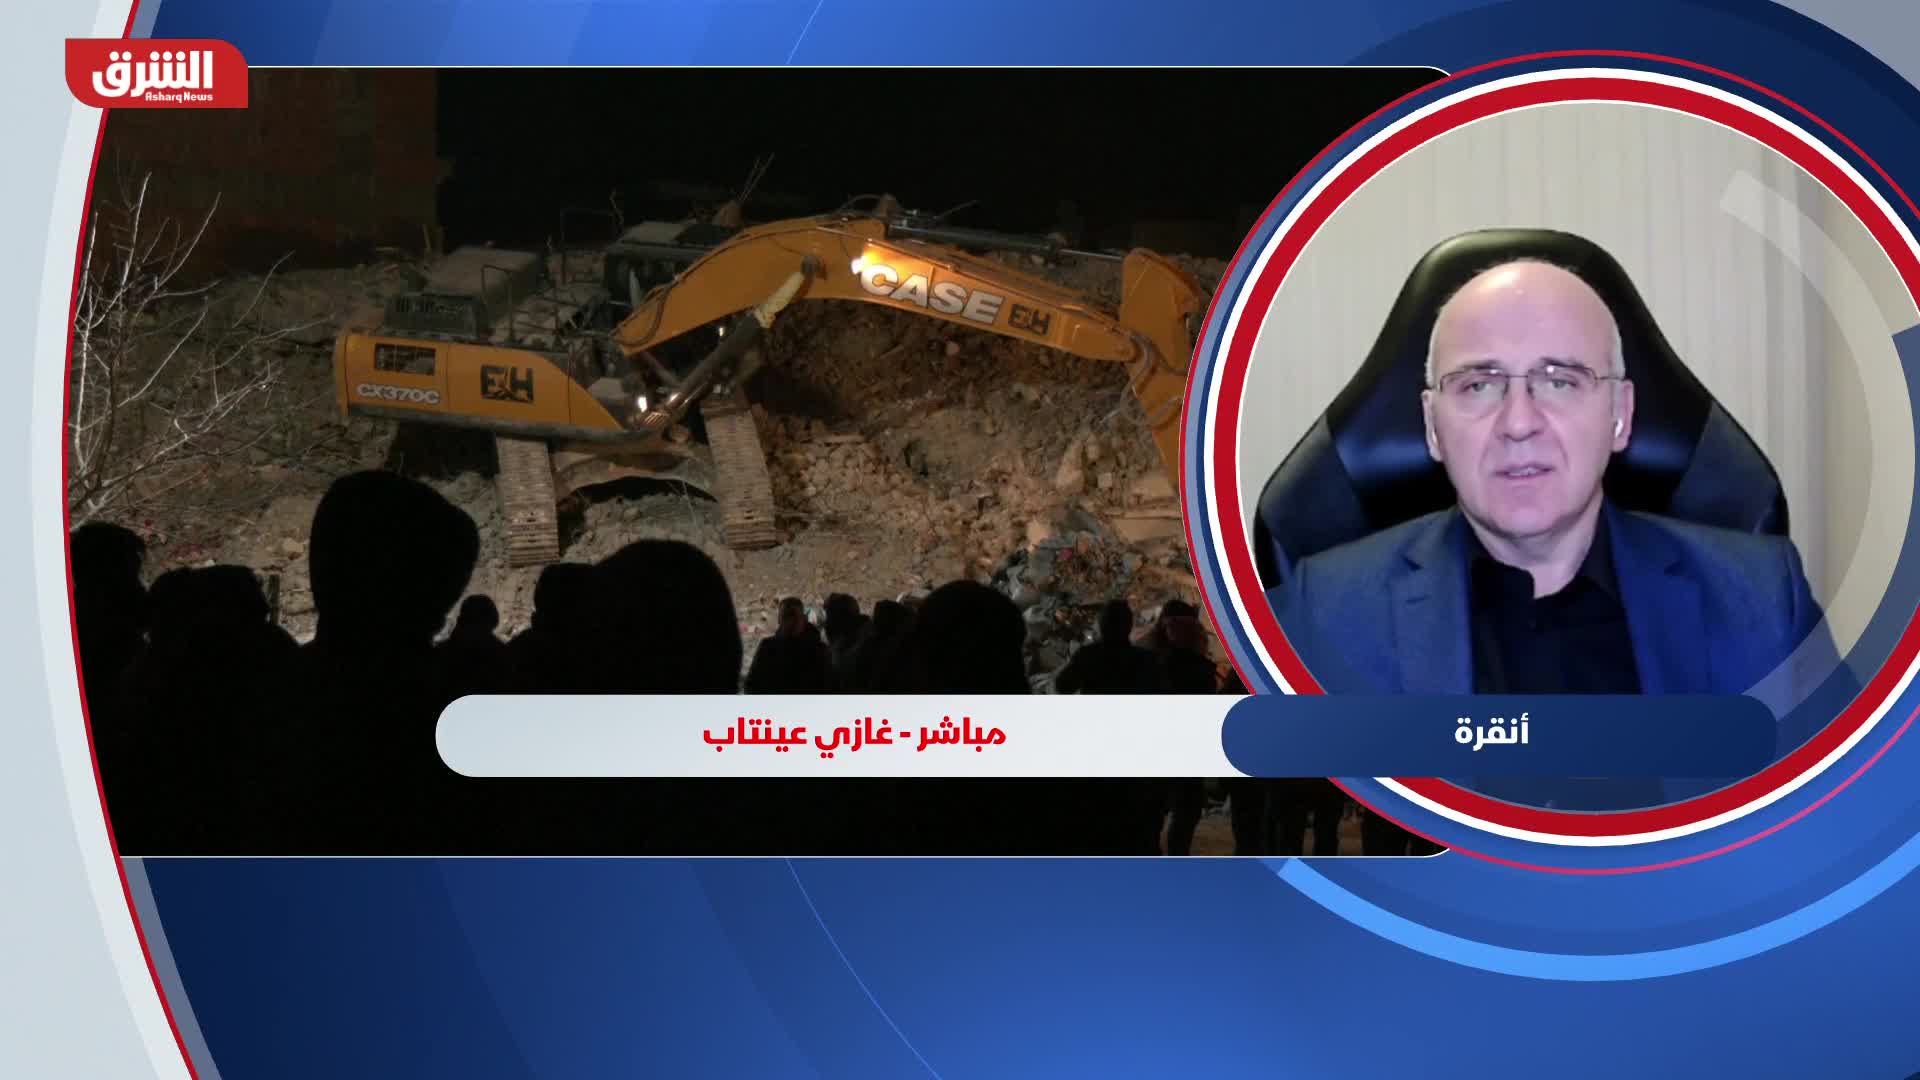 د. أحمد أويصال: الزلزل استهدف 10 محافظات تركية وخمسة سورية